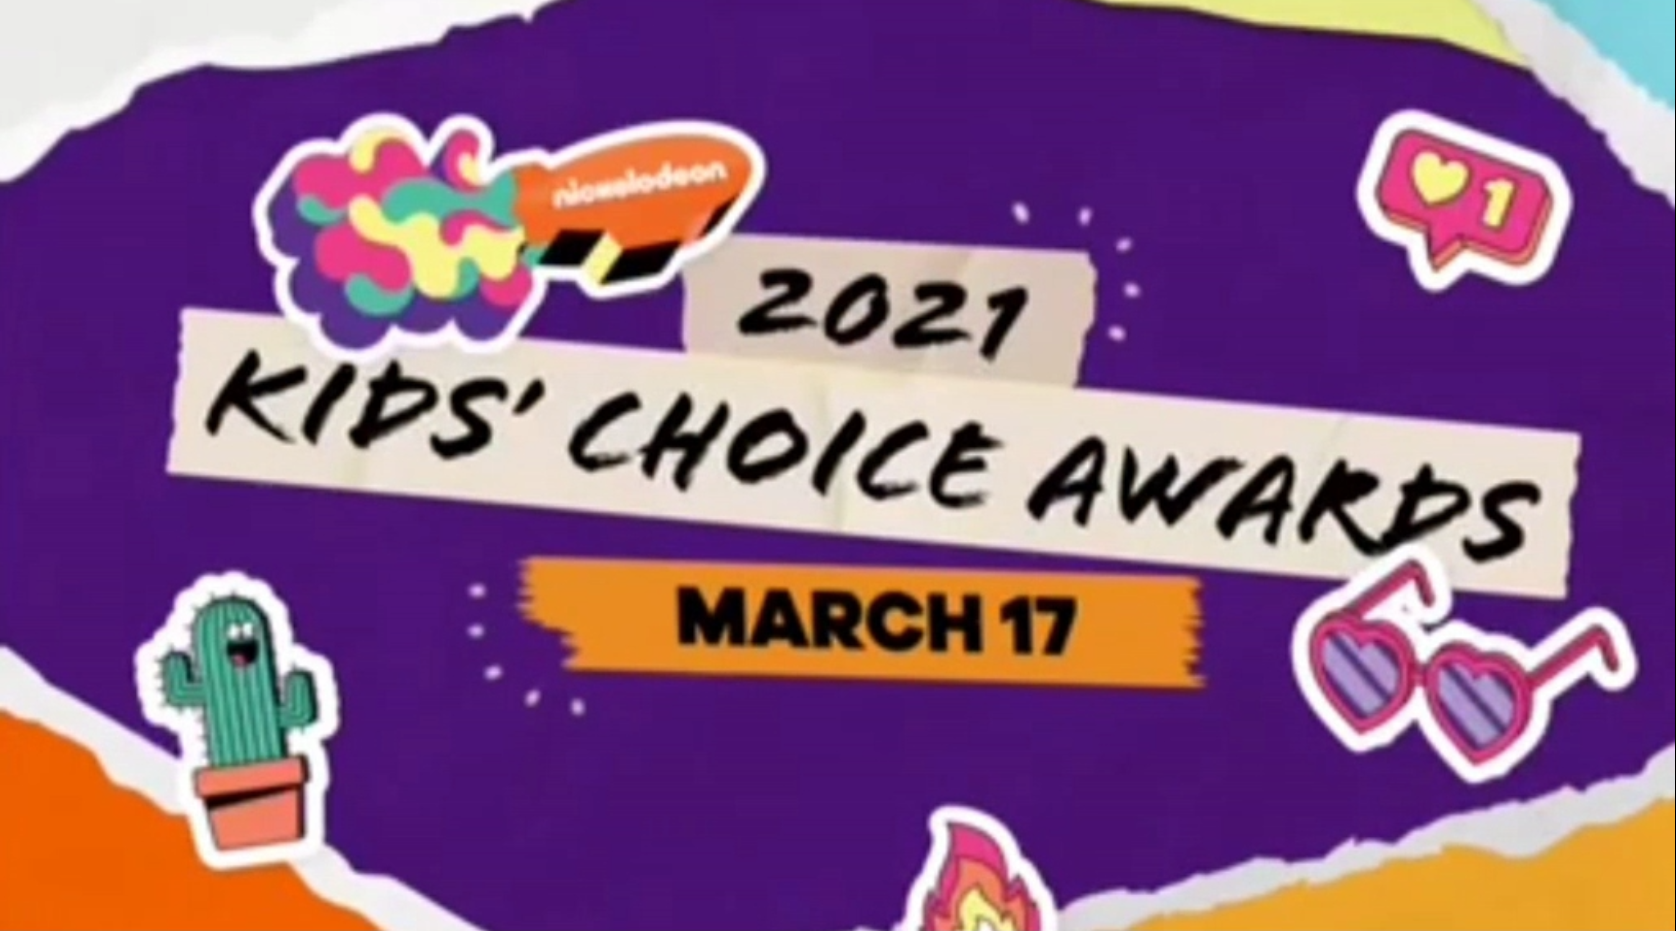 Saksikan Kids Choice Awards  Mulai 17 Maret 2021 Hanya di Nickelodeon Indonesia Beserta episode baru Alvin!, Loud House, Casagrande dan masih banyak lagi!.